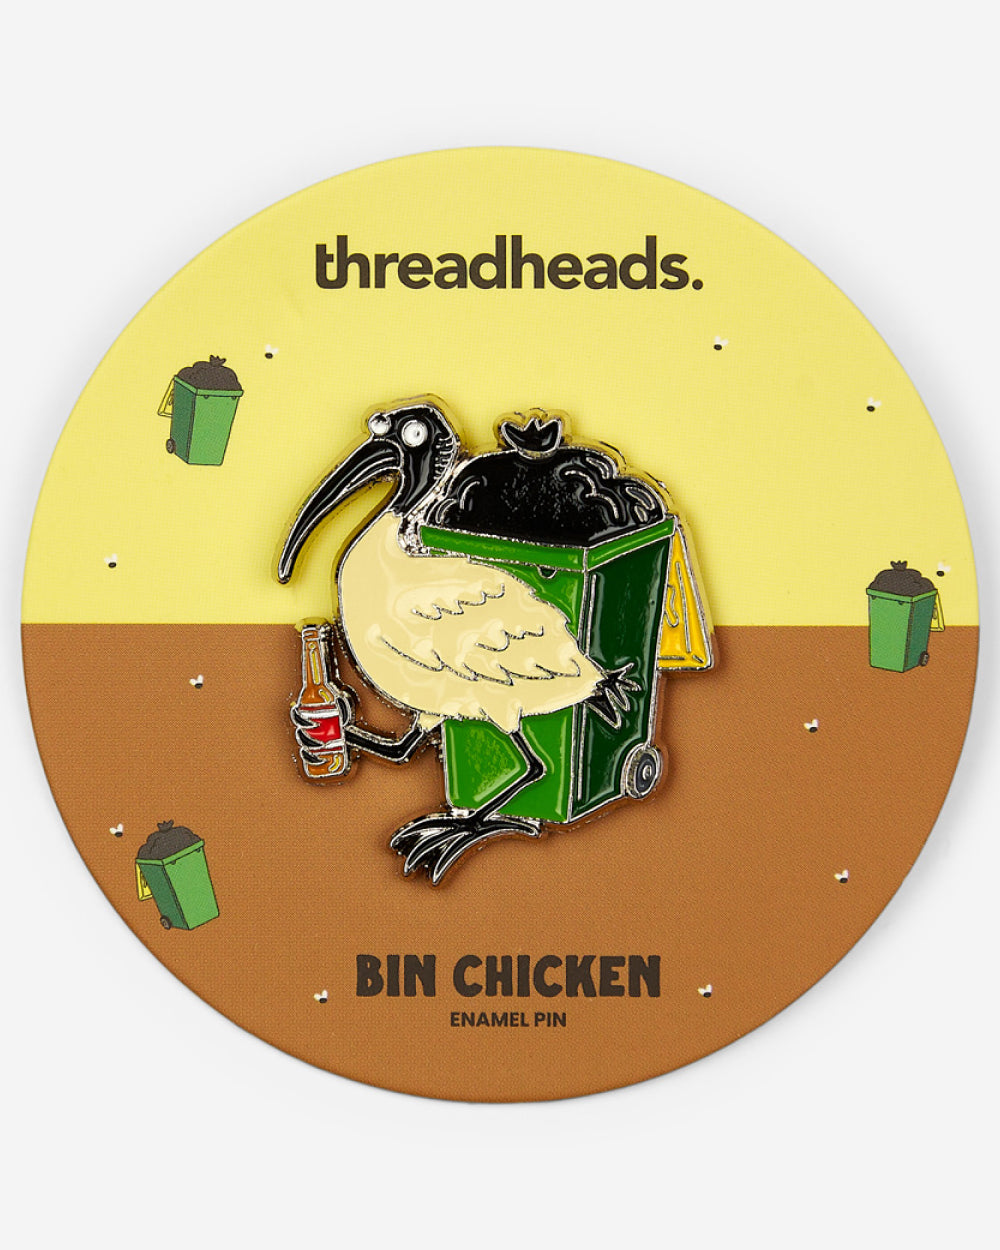 Bin Chicken Enamel Pin